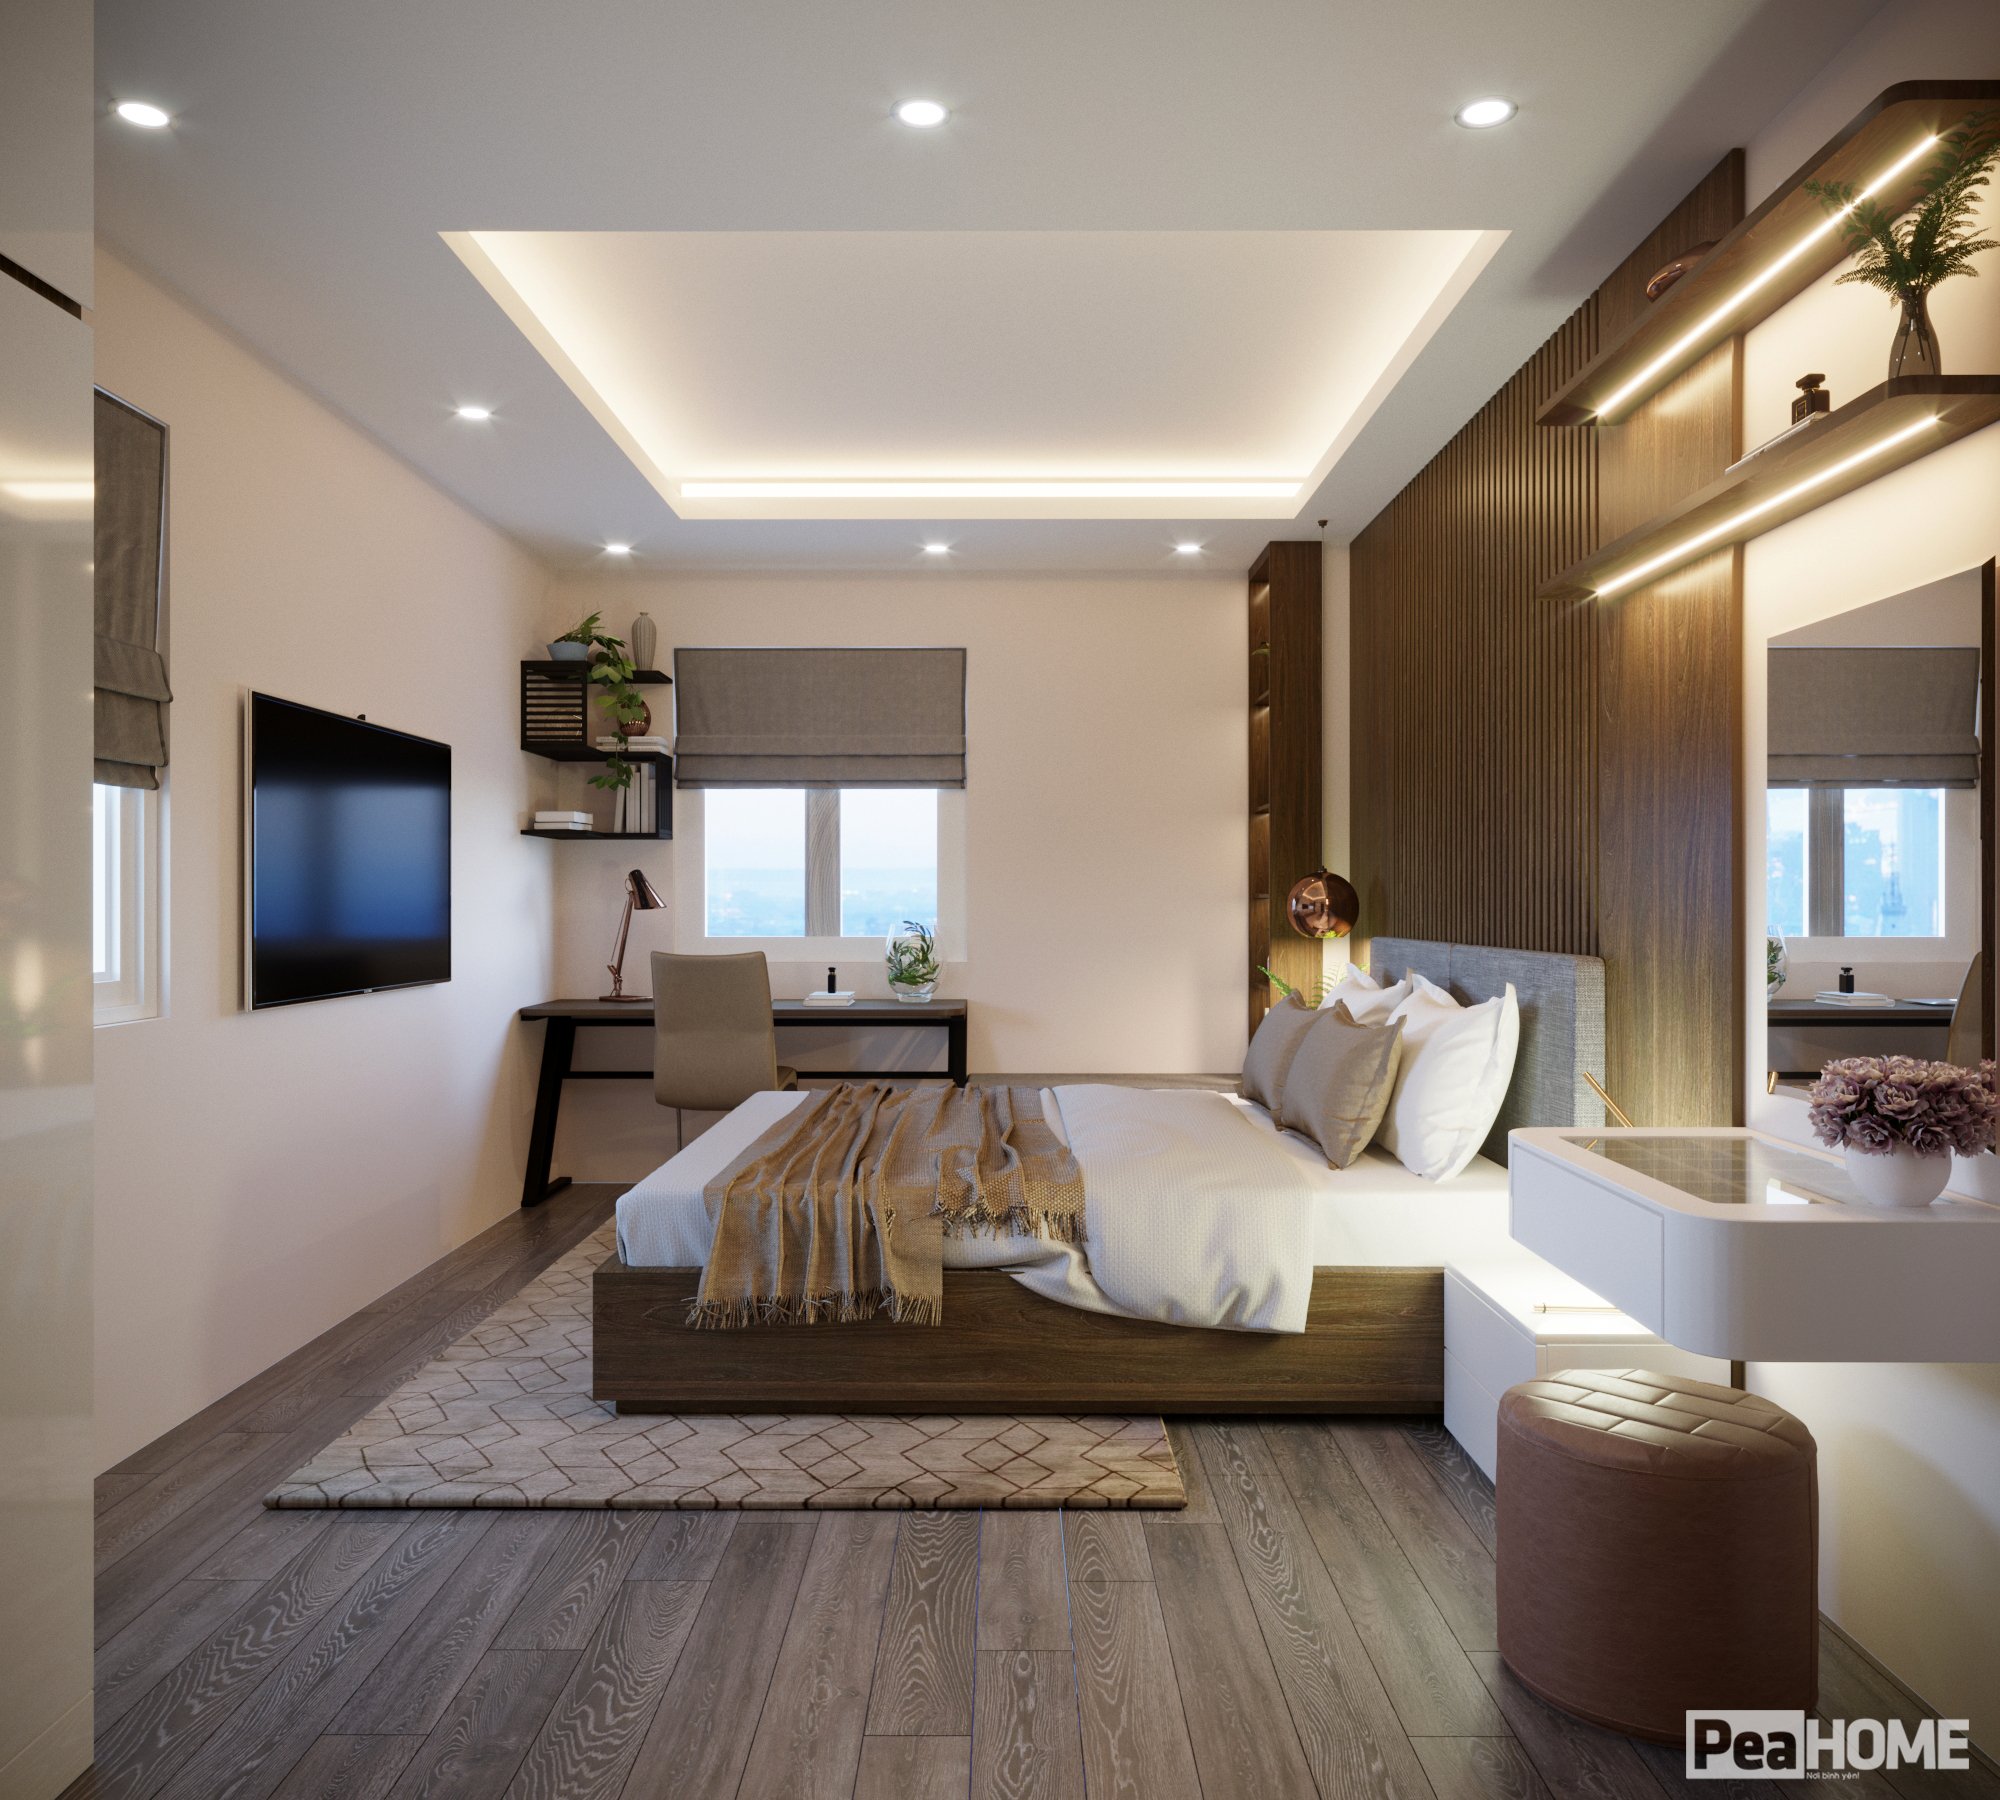 thiết kế nội thất chung cư tại Hà Nội NỘI THẤT CHUNG CƯ  12 1559896497